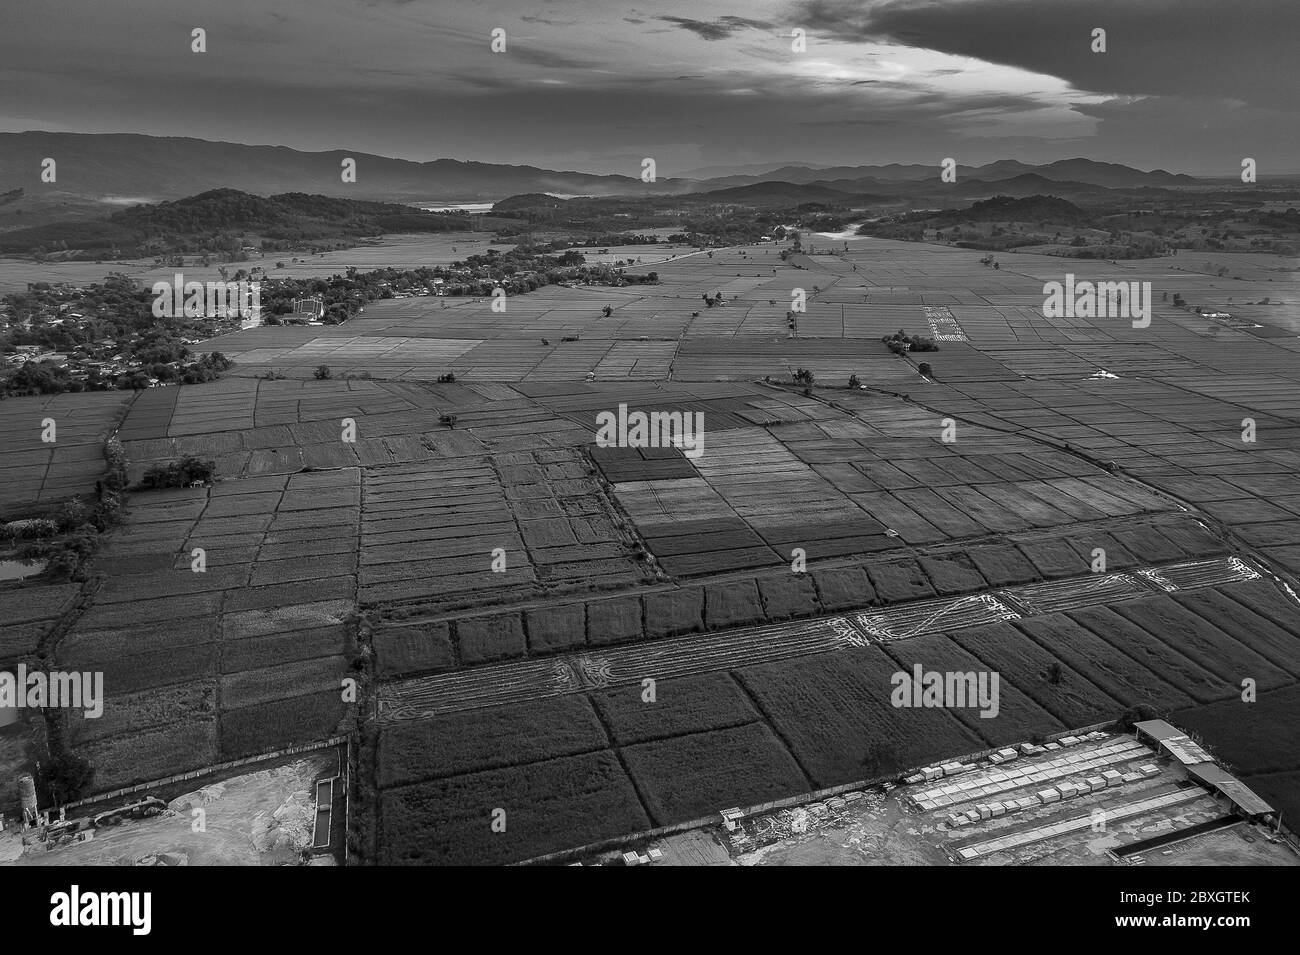 Luftaufnahme von Ackerland/riice Feld in Thailand. Luftaufnahmen Stockfoto